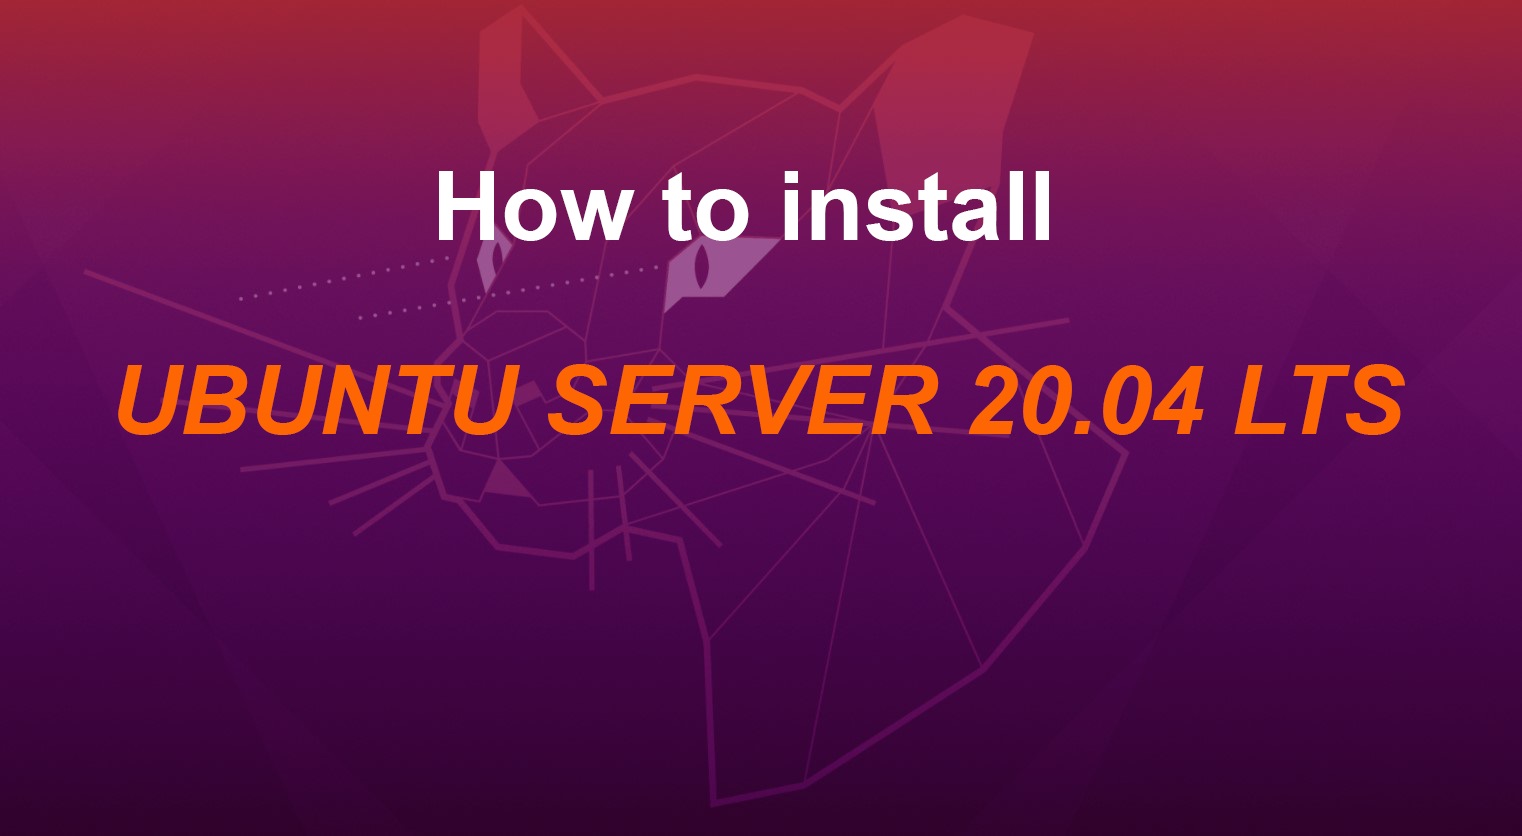 ow-to-install-ubuntu-server